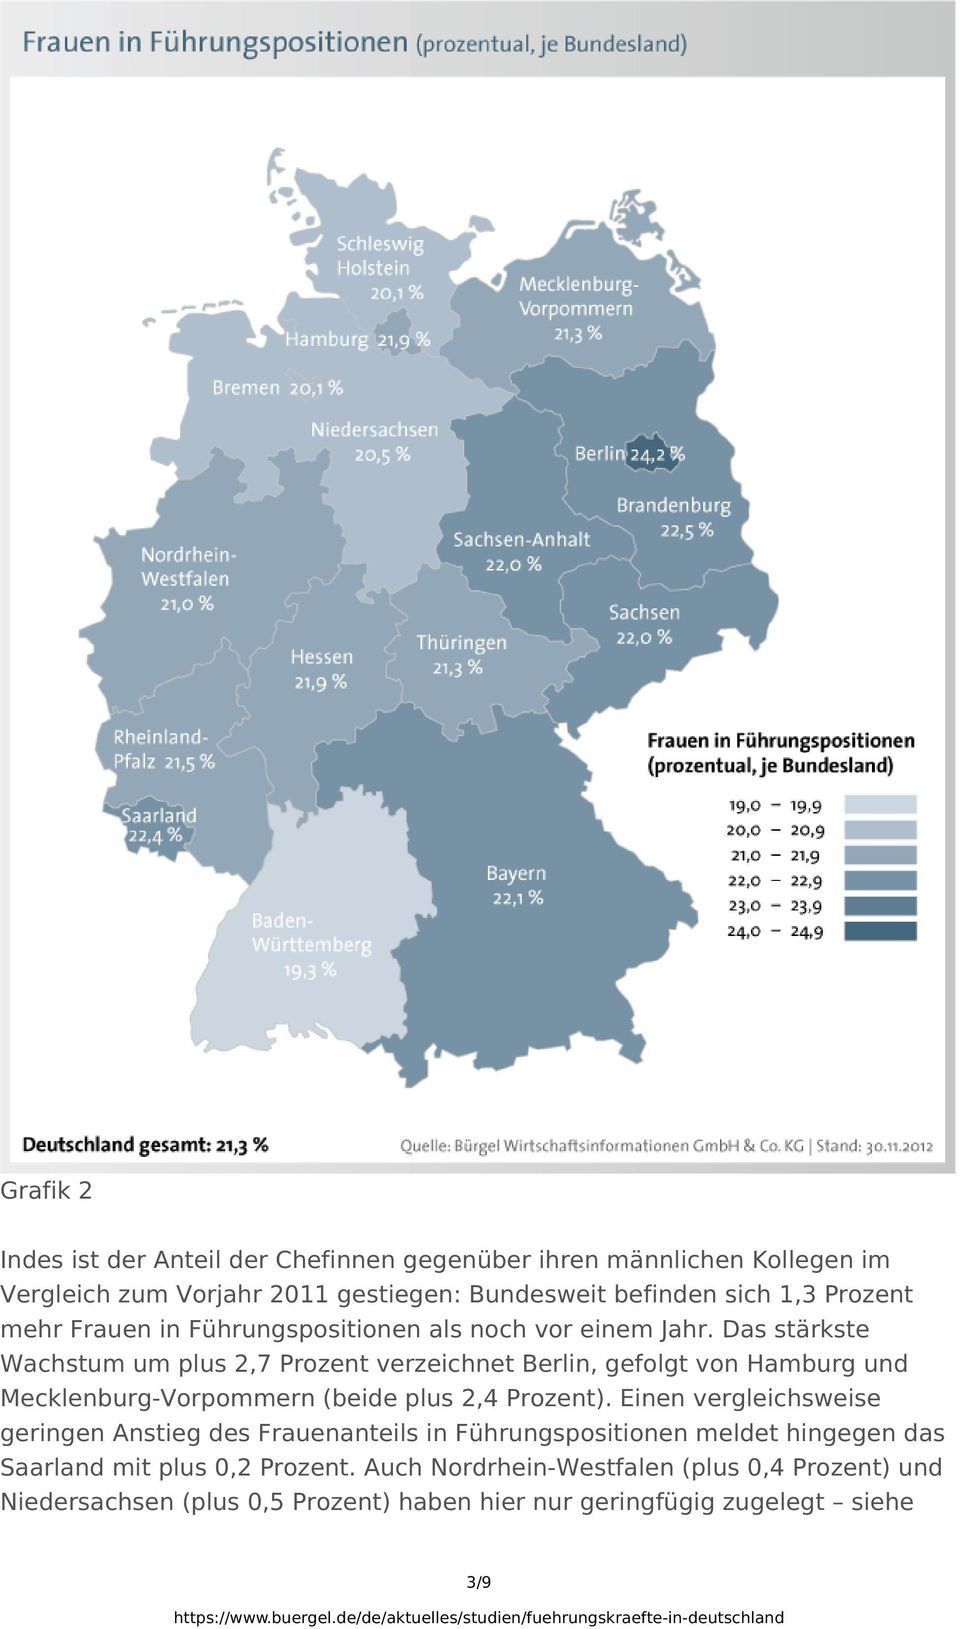 Das stärkste Wachstum um plus 2,7 Prozent verzeichnet Berlin, gefolgt von Hamburg und Mecklenburg-Vorpommern (beide plus 2,4 Prozent).